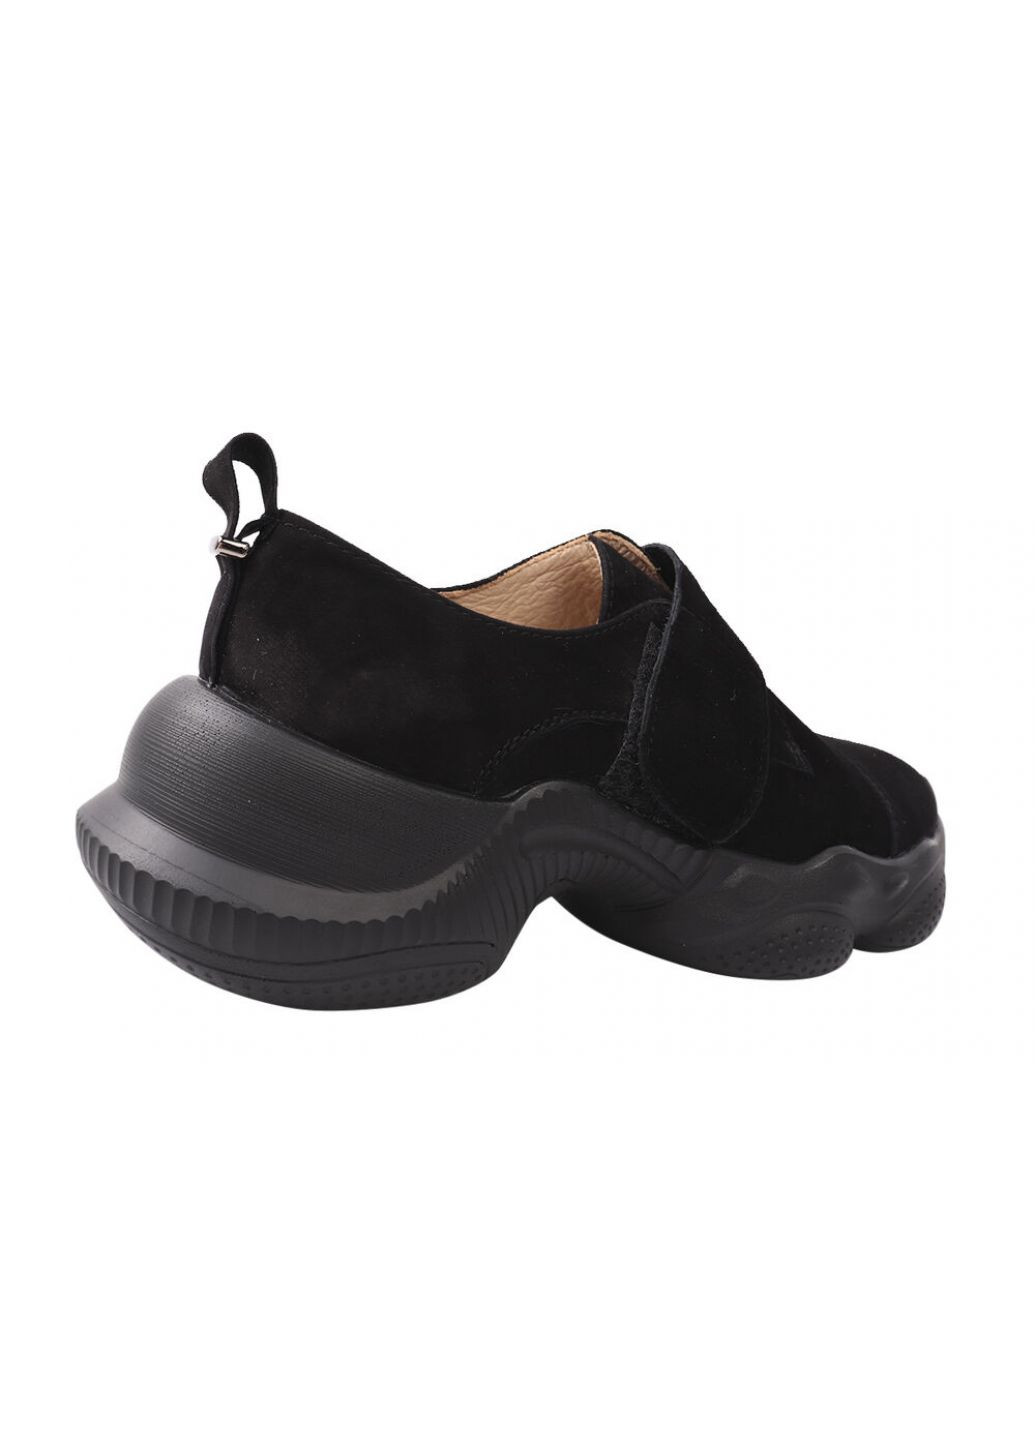 Черные кроссовки женские из натуральной замши, на низком ходу, цвет черный, Vadrus 324-21DTC